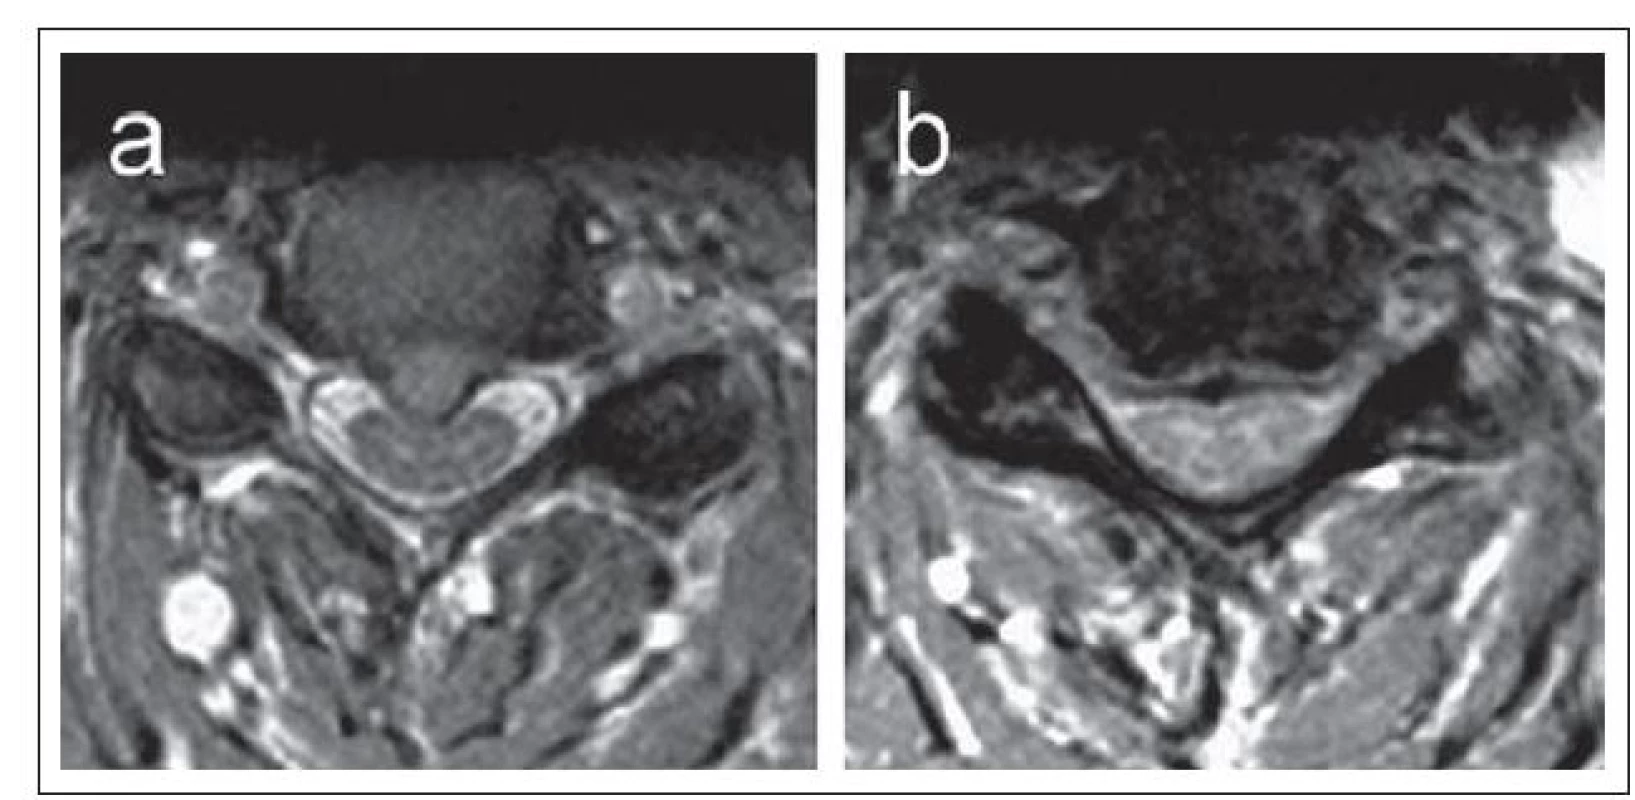 a,b) Axiální MR zobrazení dvou pacientů s cervikální spinální stenózou s odlišným typem míšní komprese.